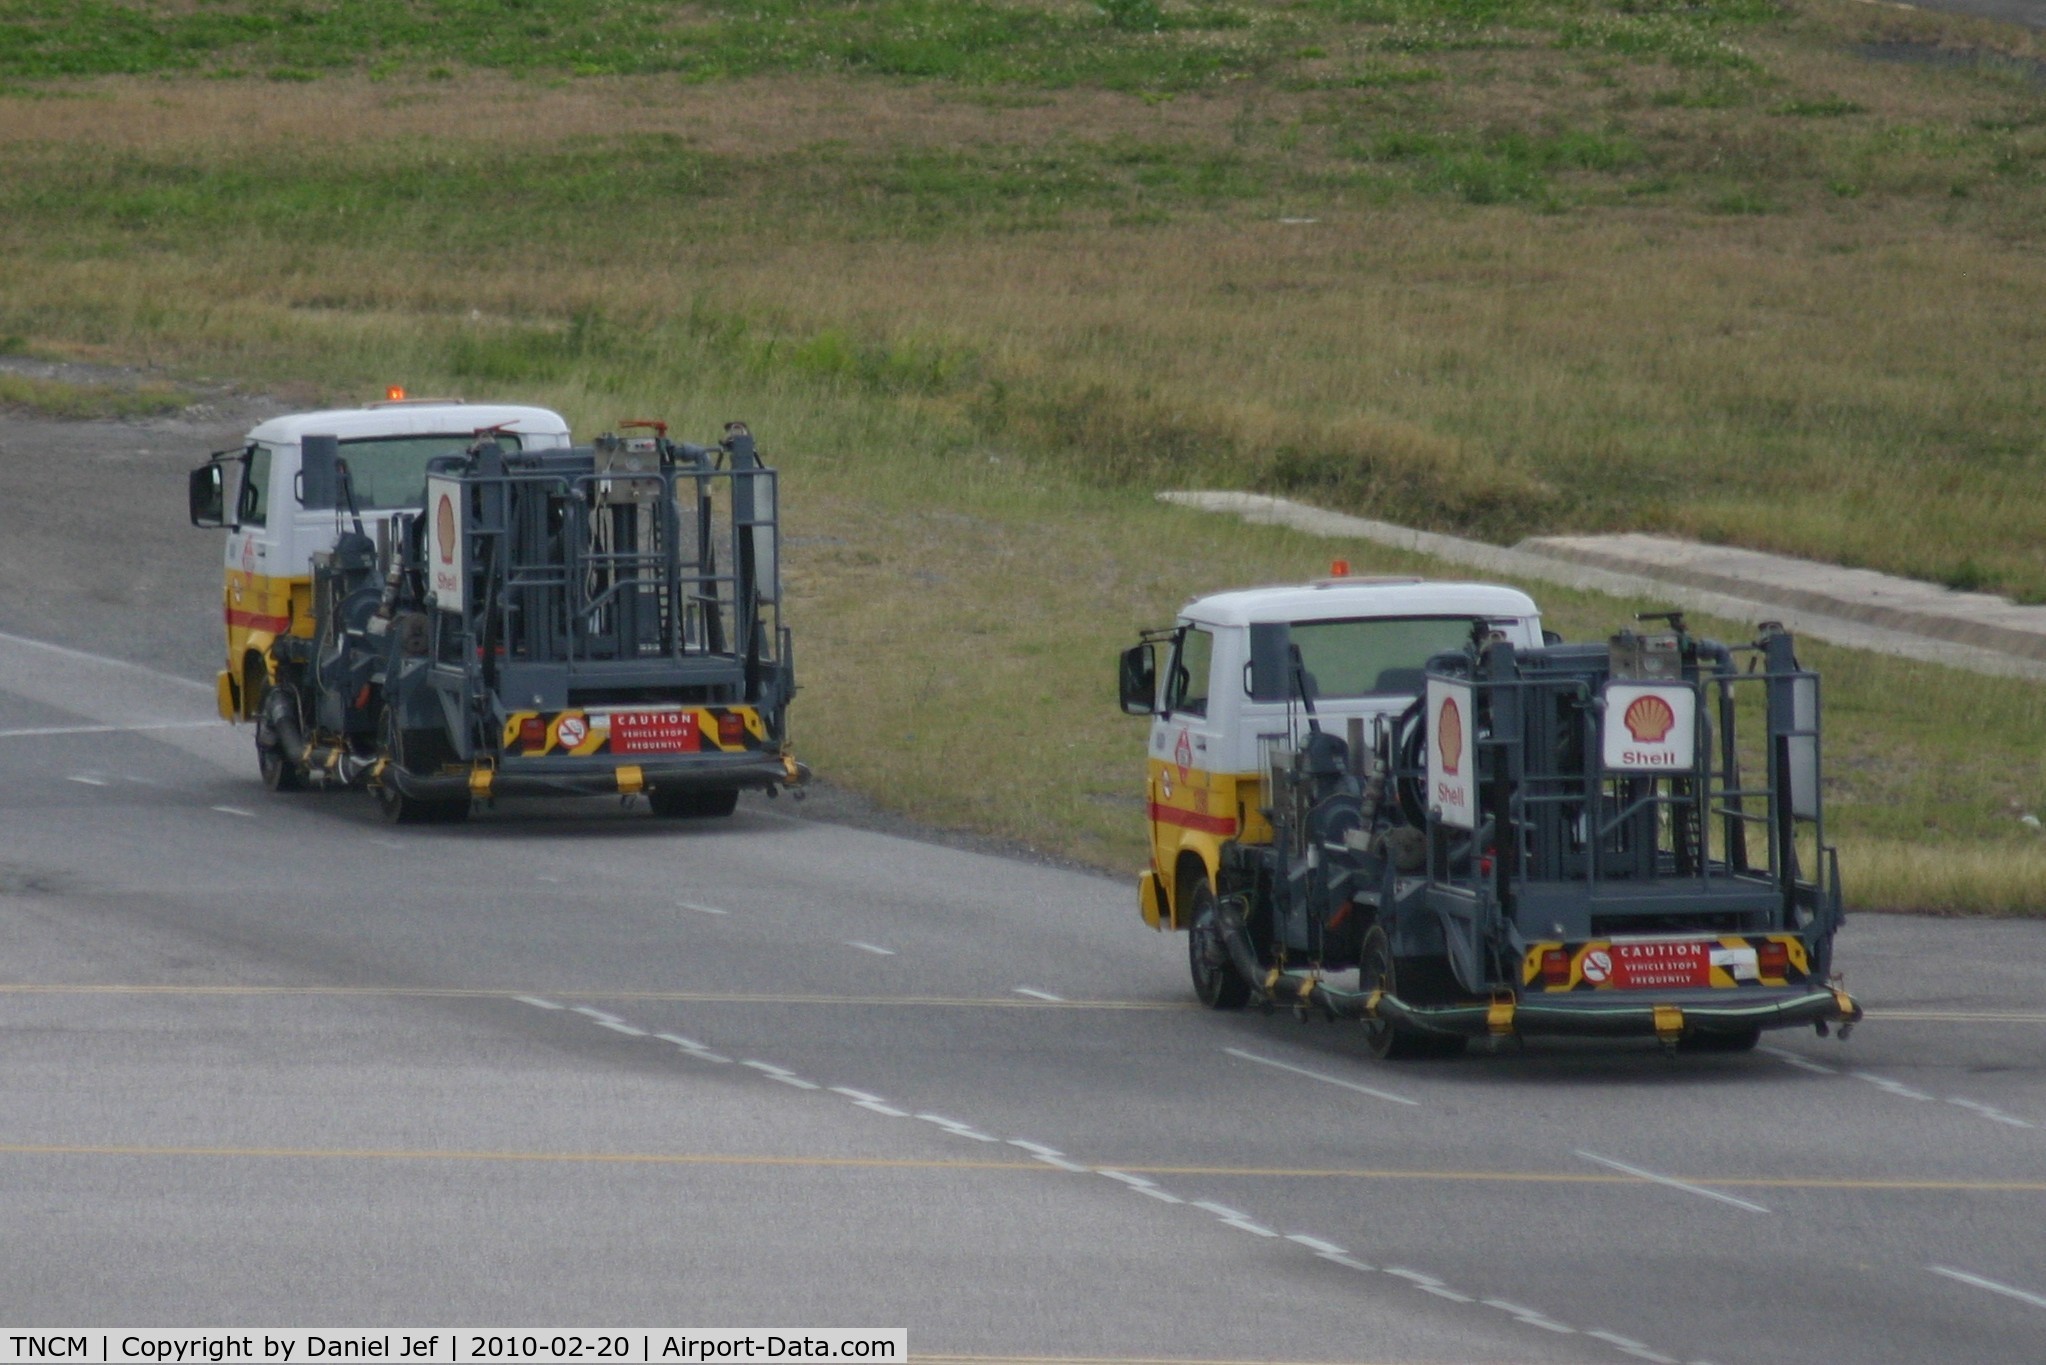 Princess Juliana International Airport, Philipsburg, Sint Maarten Netherlands Antilles (TNCM) - the fuel trucks at TNCM